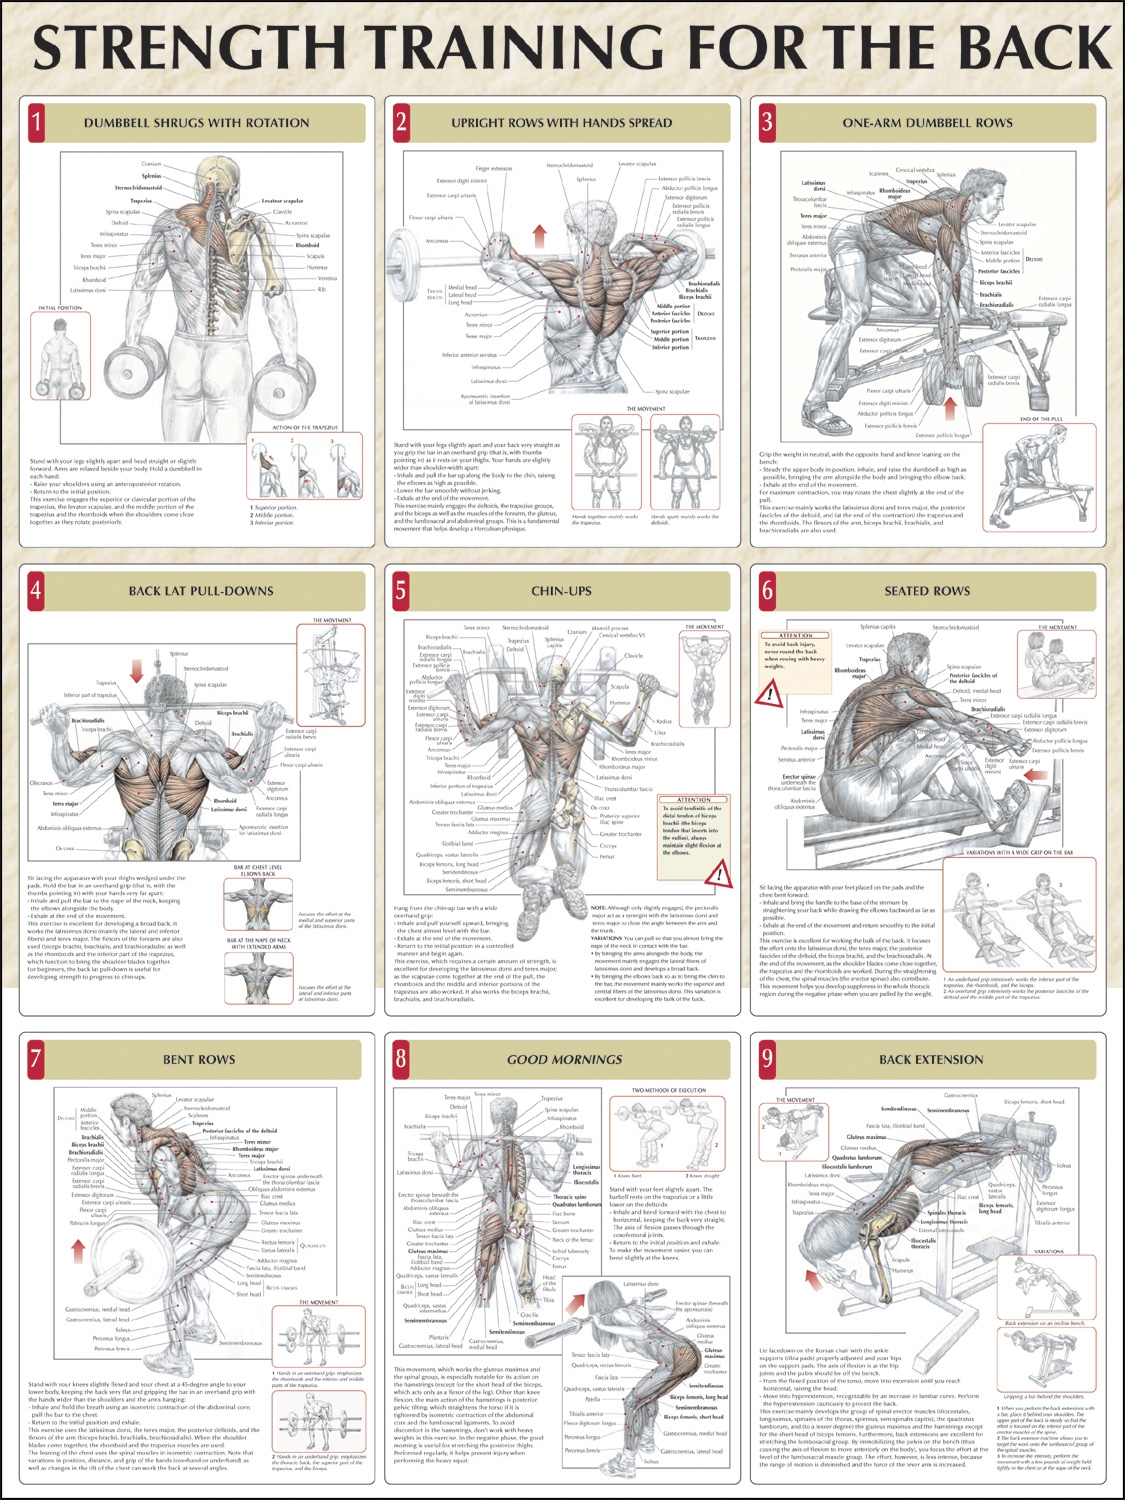 Strength training anatomy. Силовые упражнения на разные группы мышц. Упражнения на всю группу мышц. План тренировок на разные группы мышц. Упражнения на разные группы мышц в тренажерном зале.